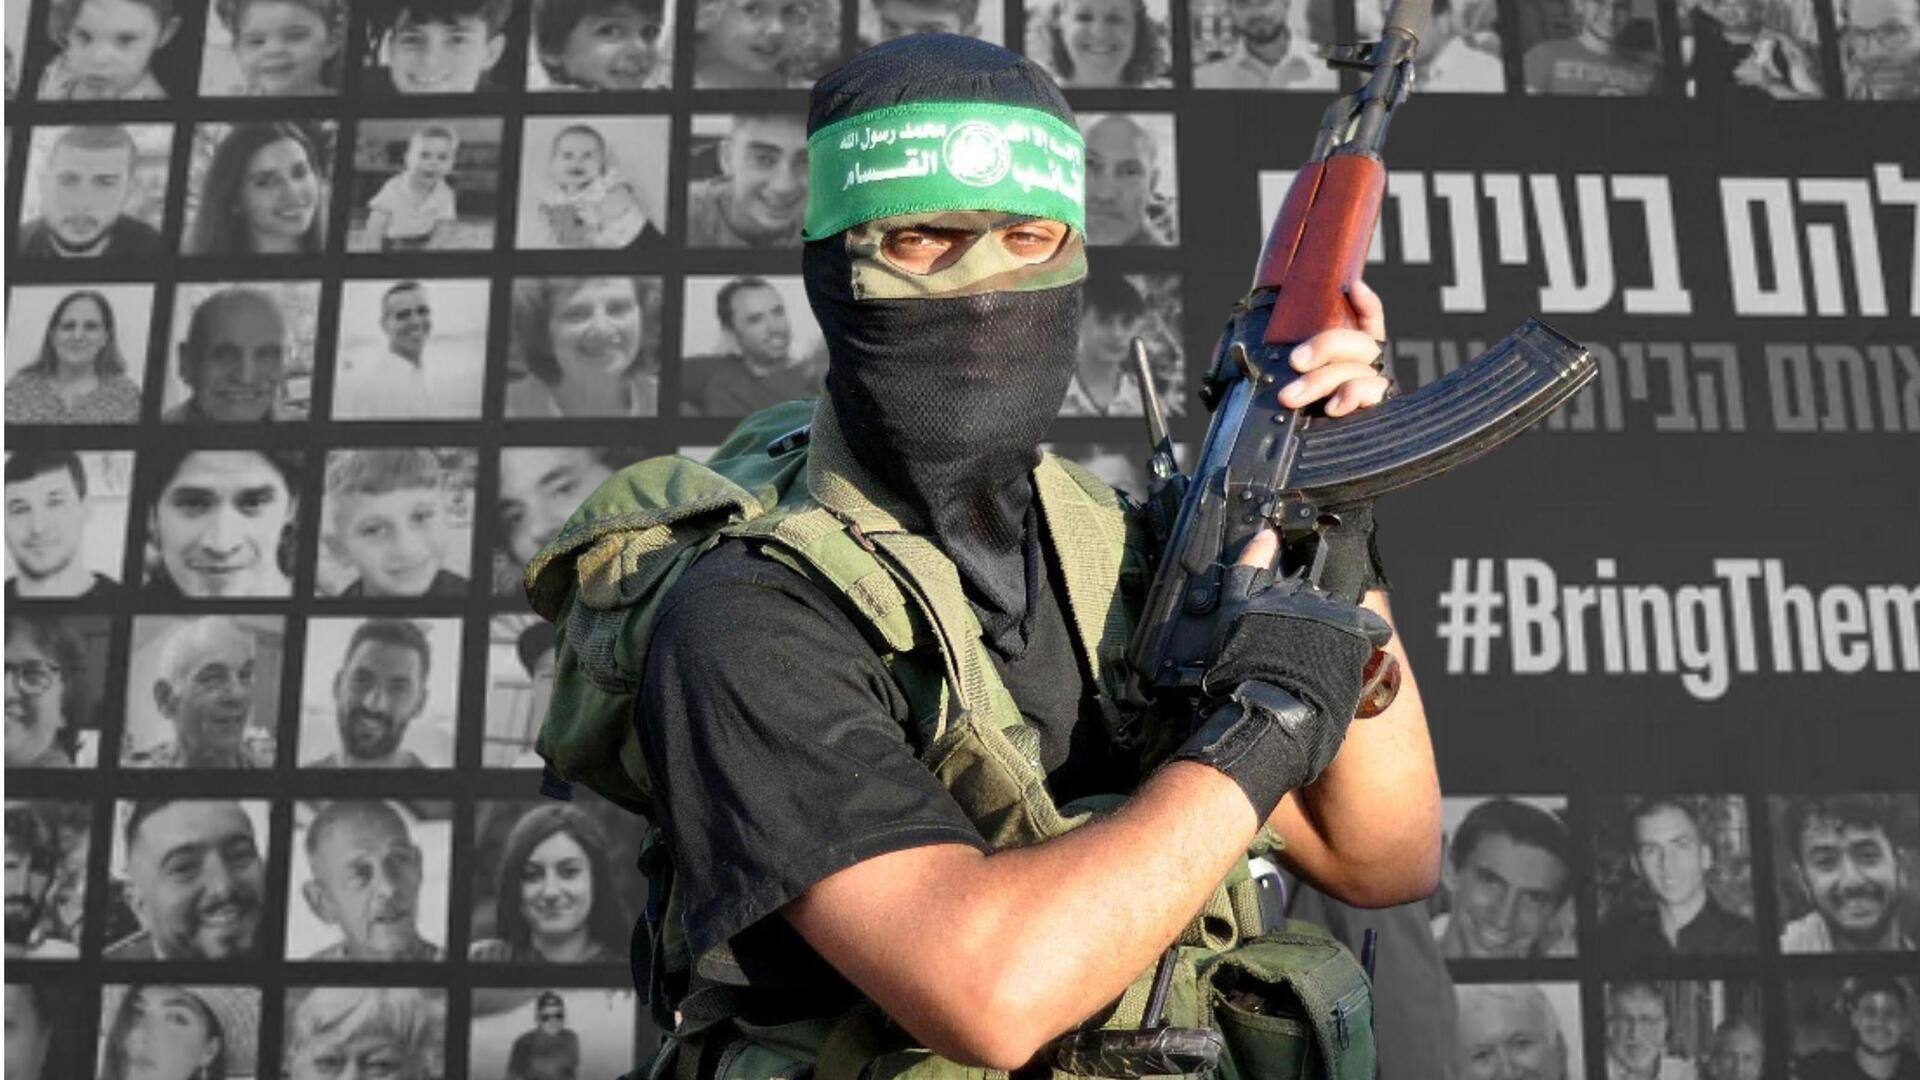 Hamas hostages: 24 మంది బందీలను విడుదల చేసిన హమాస్.. నేడు మరికొంత మందికి విముక్తి